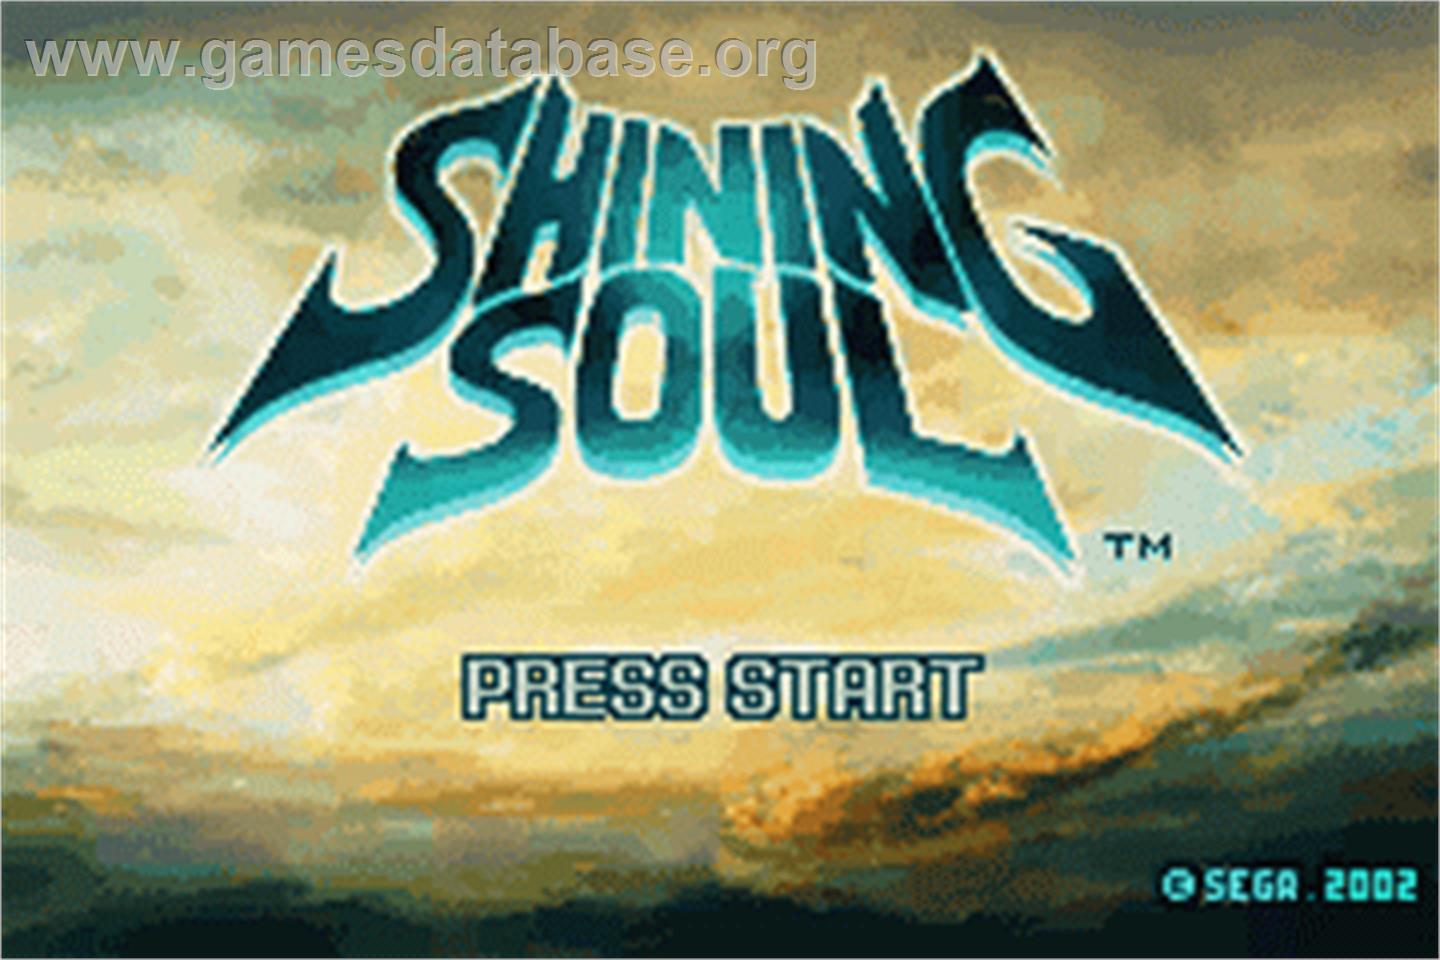 Shining Soul - Nintendo Game Boy Advance - Artwork - Title Screen